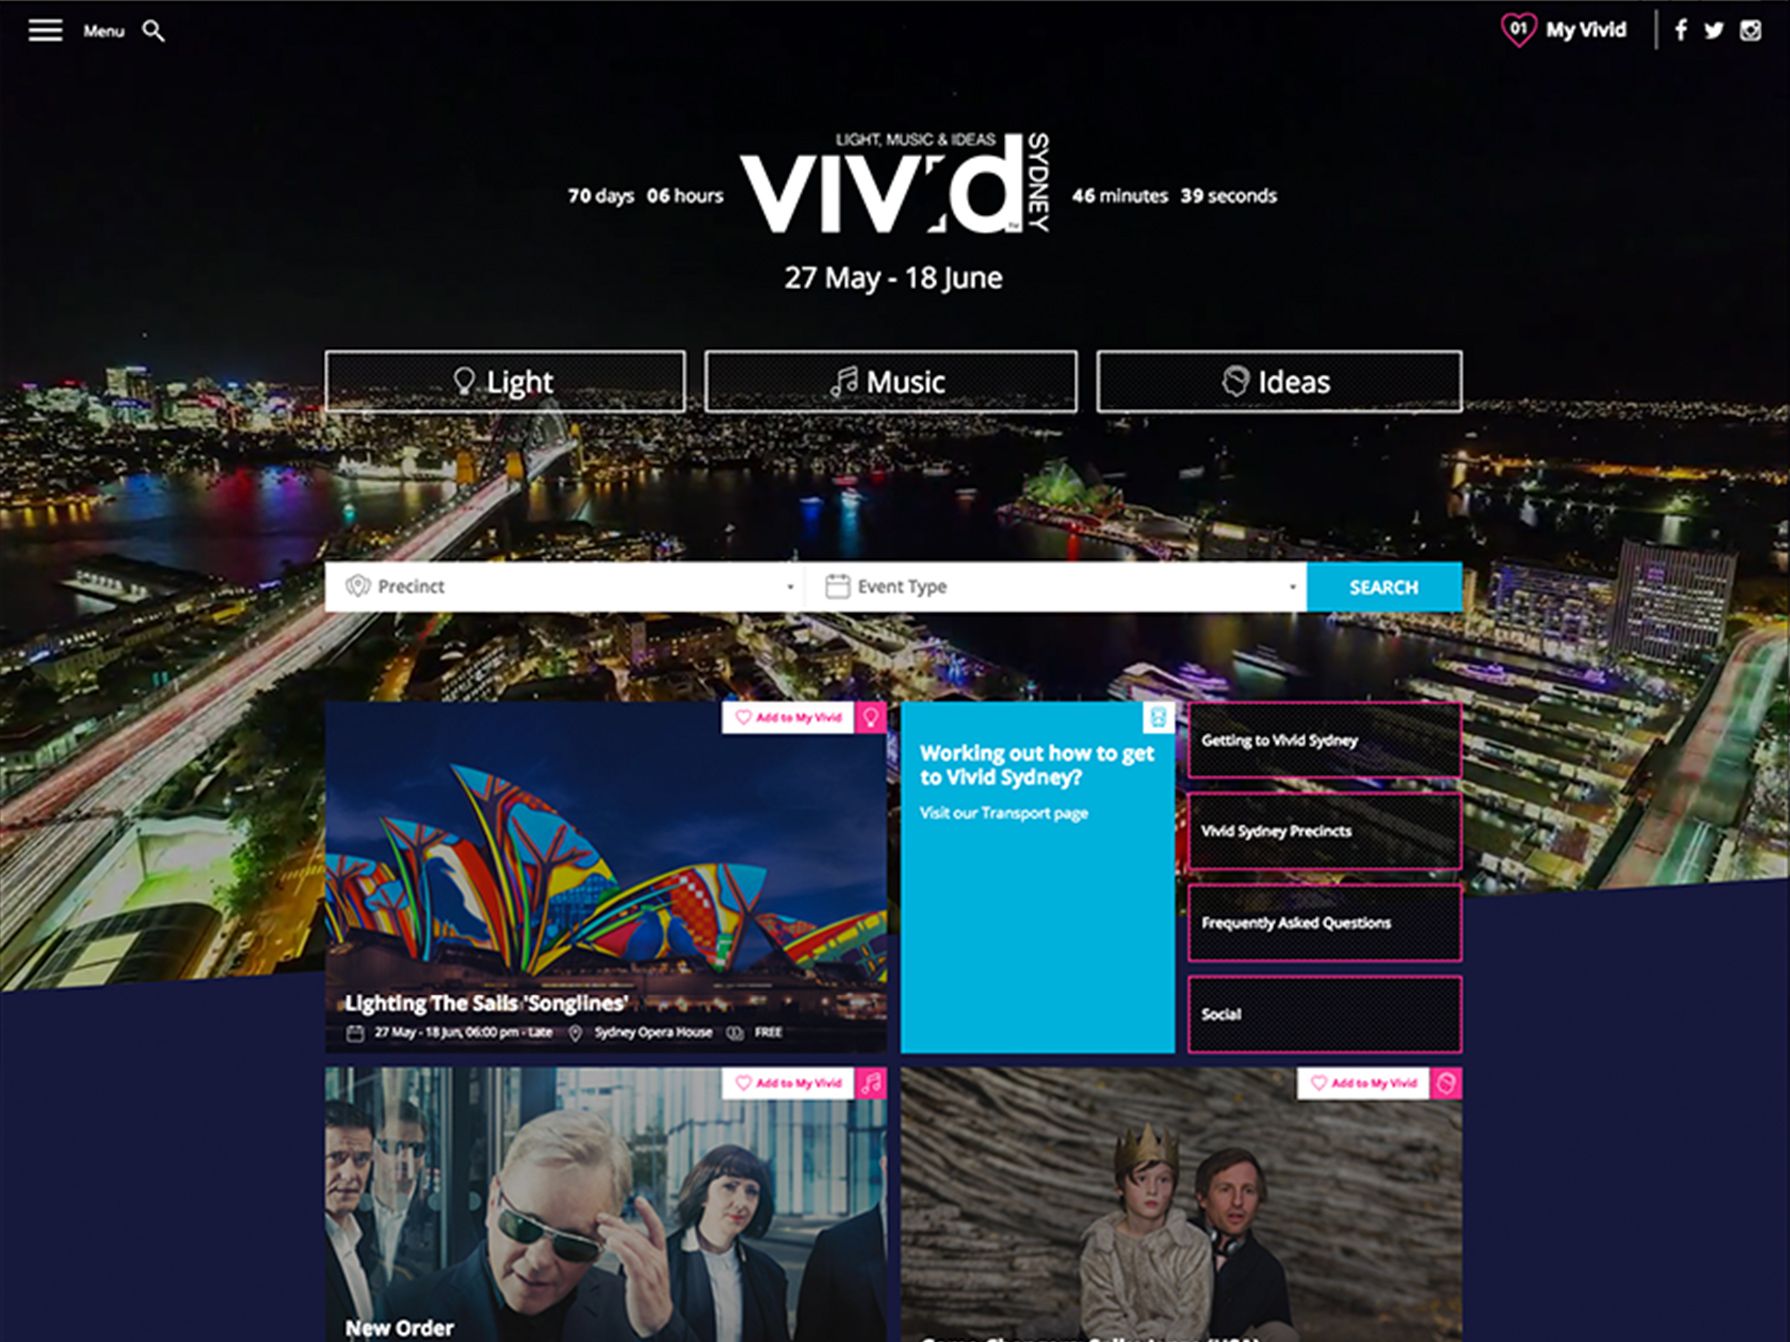 Vivid Sydney 2017 Home Page